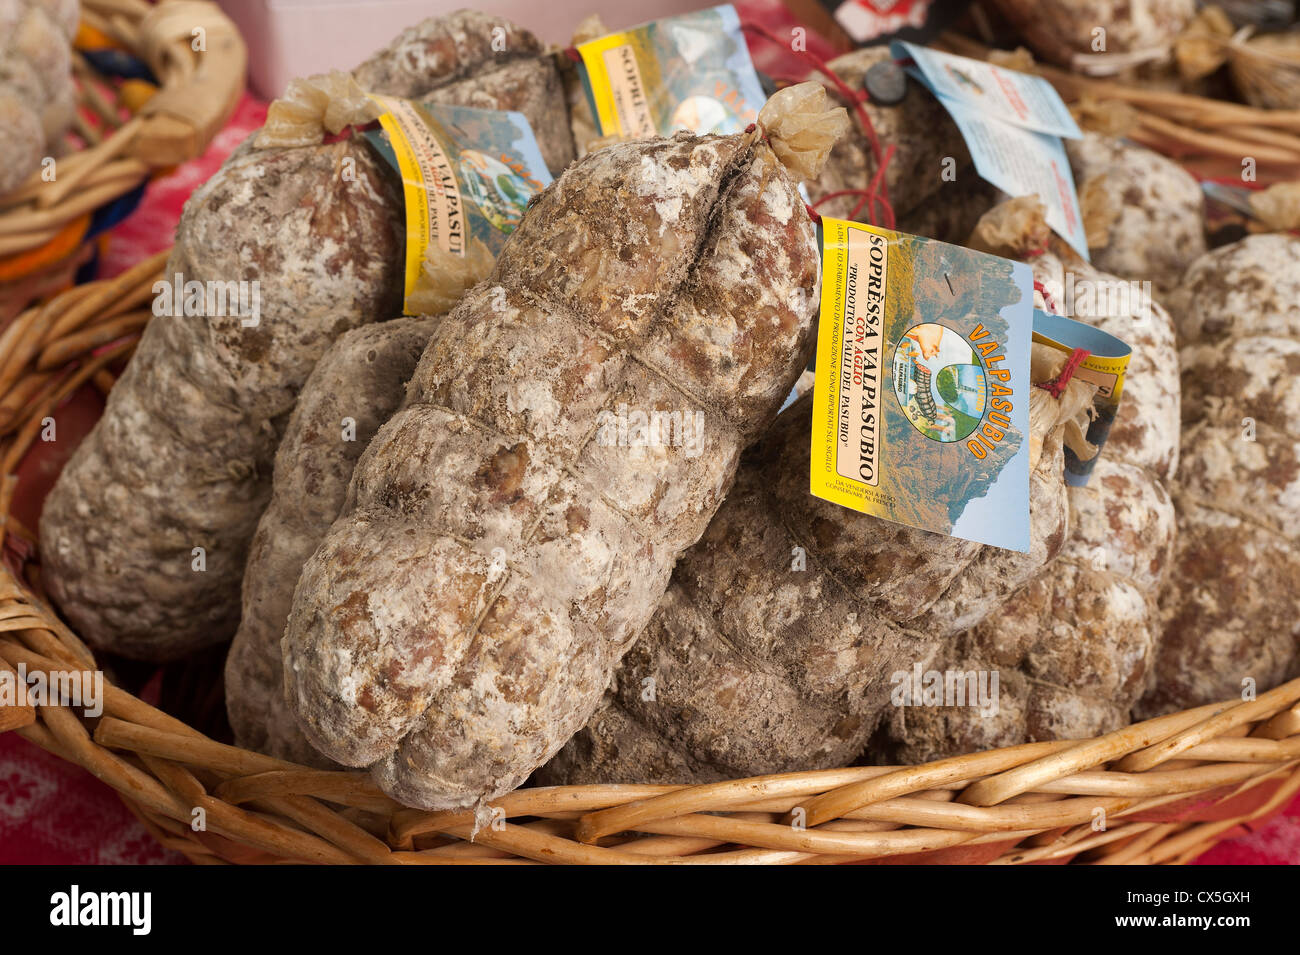 Sopressa, typisches Produkt des Veneto, in einem Markt mit Lebensmitteln angezeigt. Rom, Italien Stockfoto